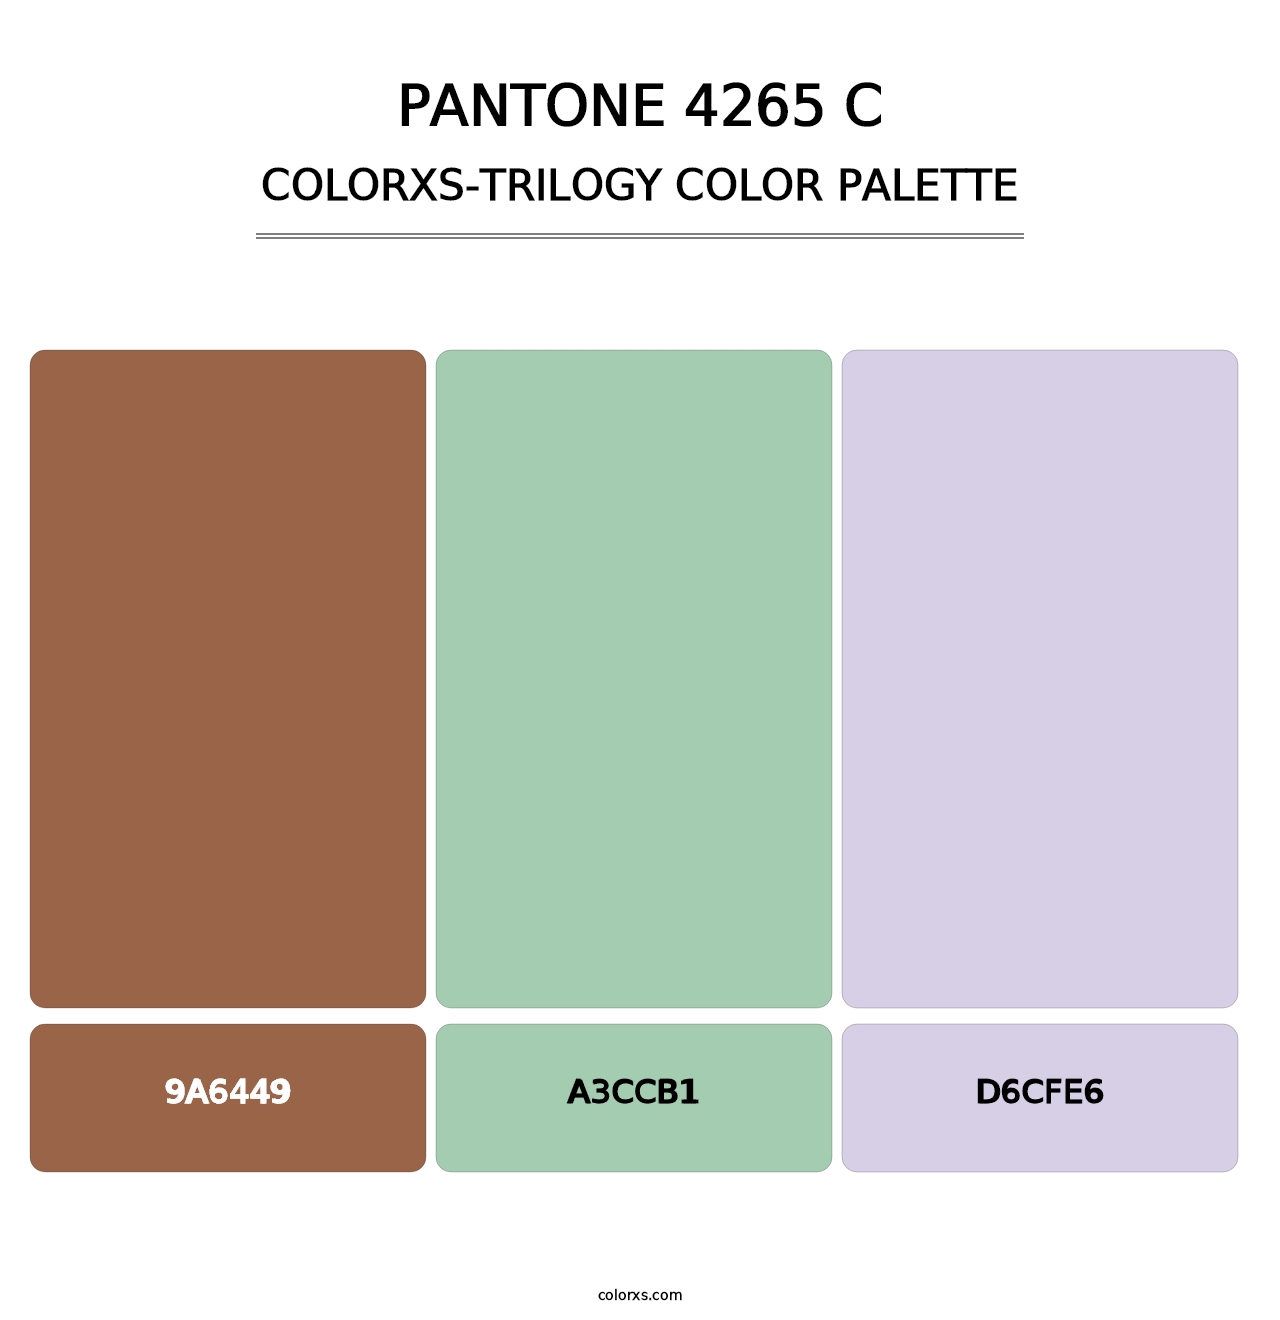 PANTONE 4265 C - Colorxs Trilogy Palette